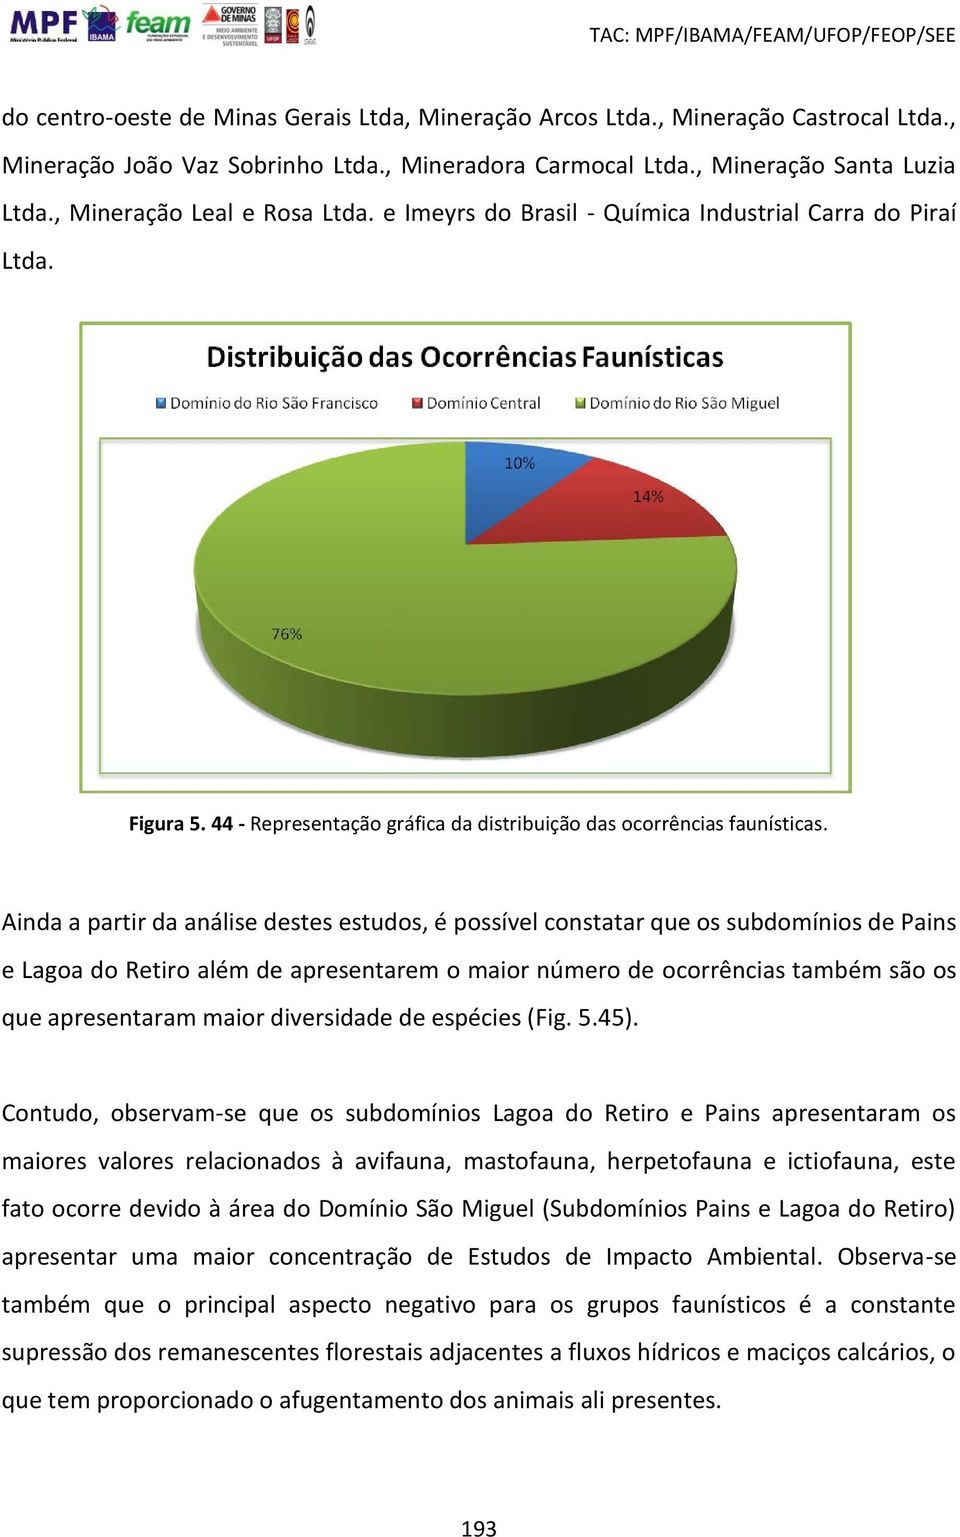 44 - Representação gráfica da distribuição das ocorrências faunísticas.